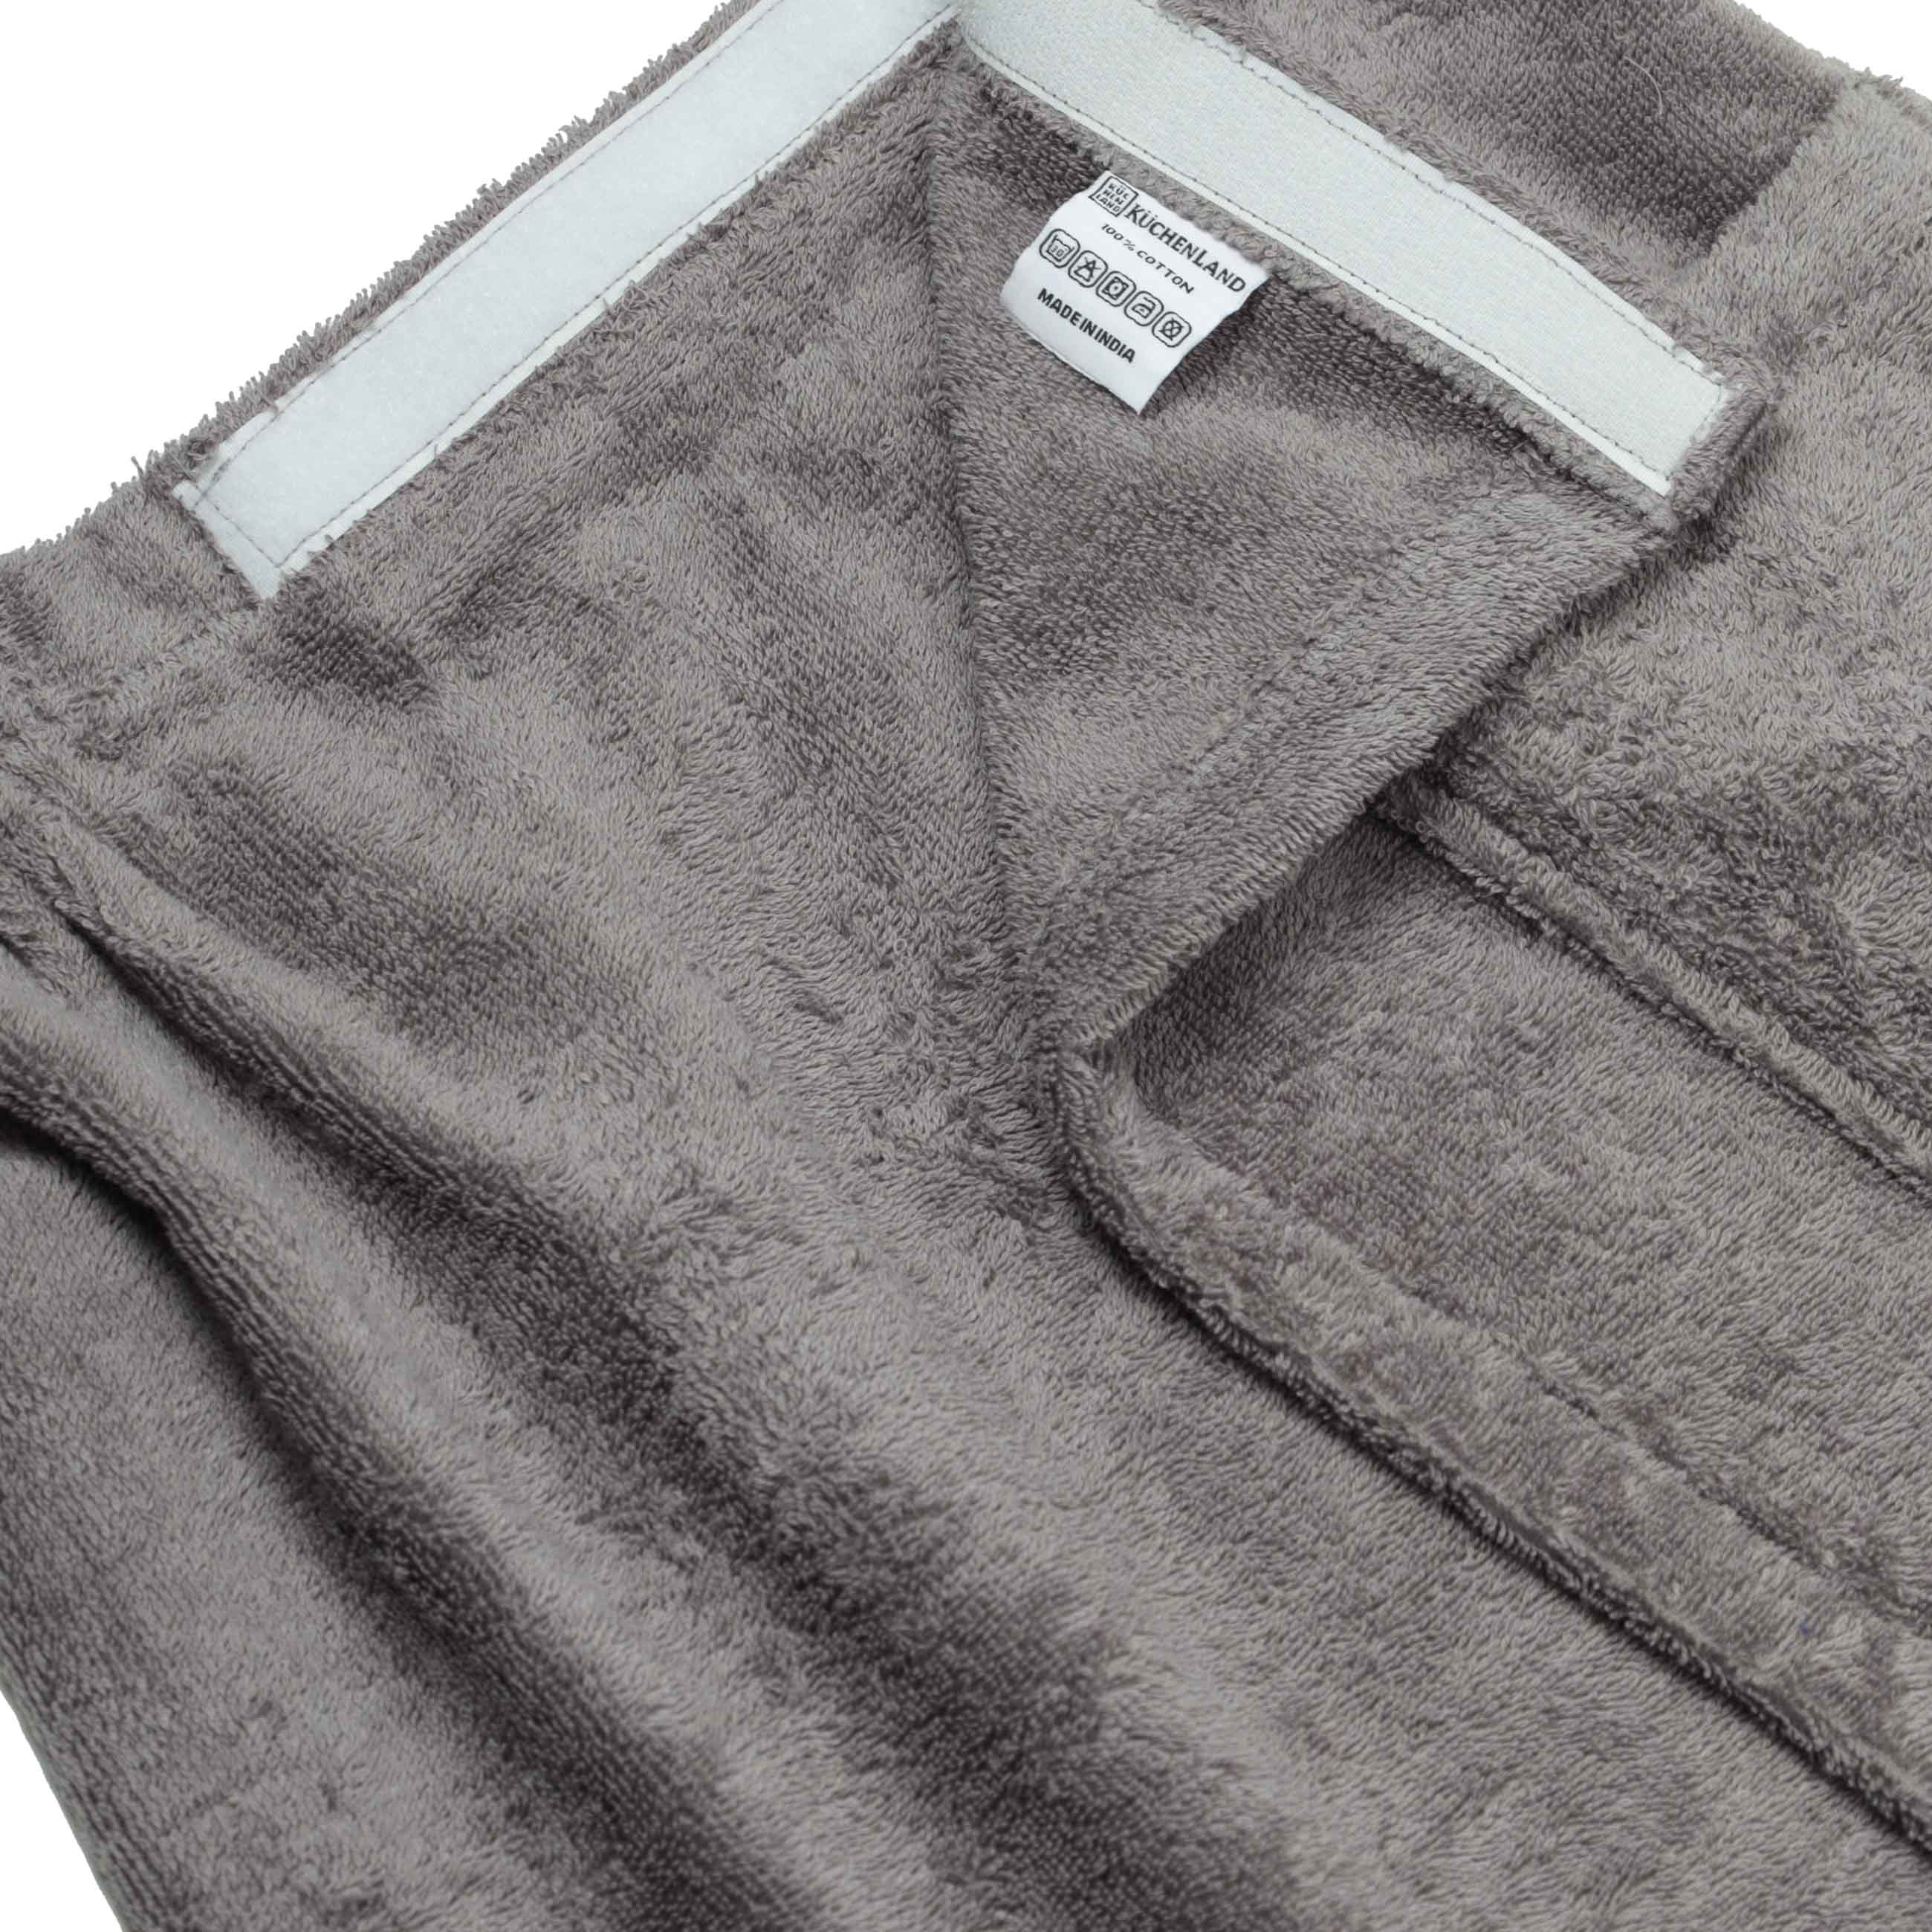 Полотенце-килт мужское, 60х140 см, на липучке, хлопок, темно-серое, Spa towel изображение № 3